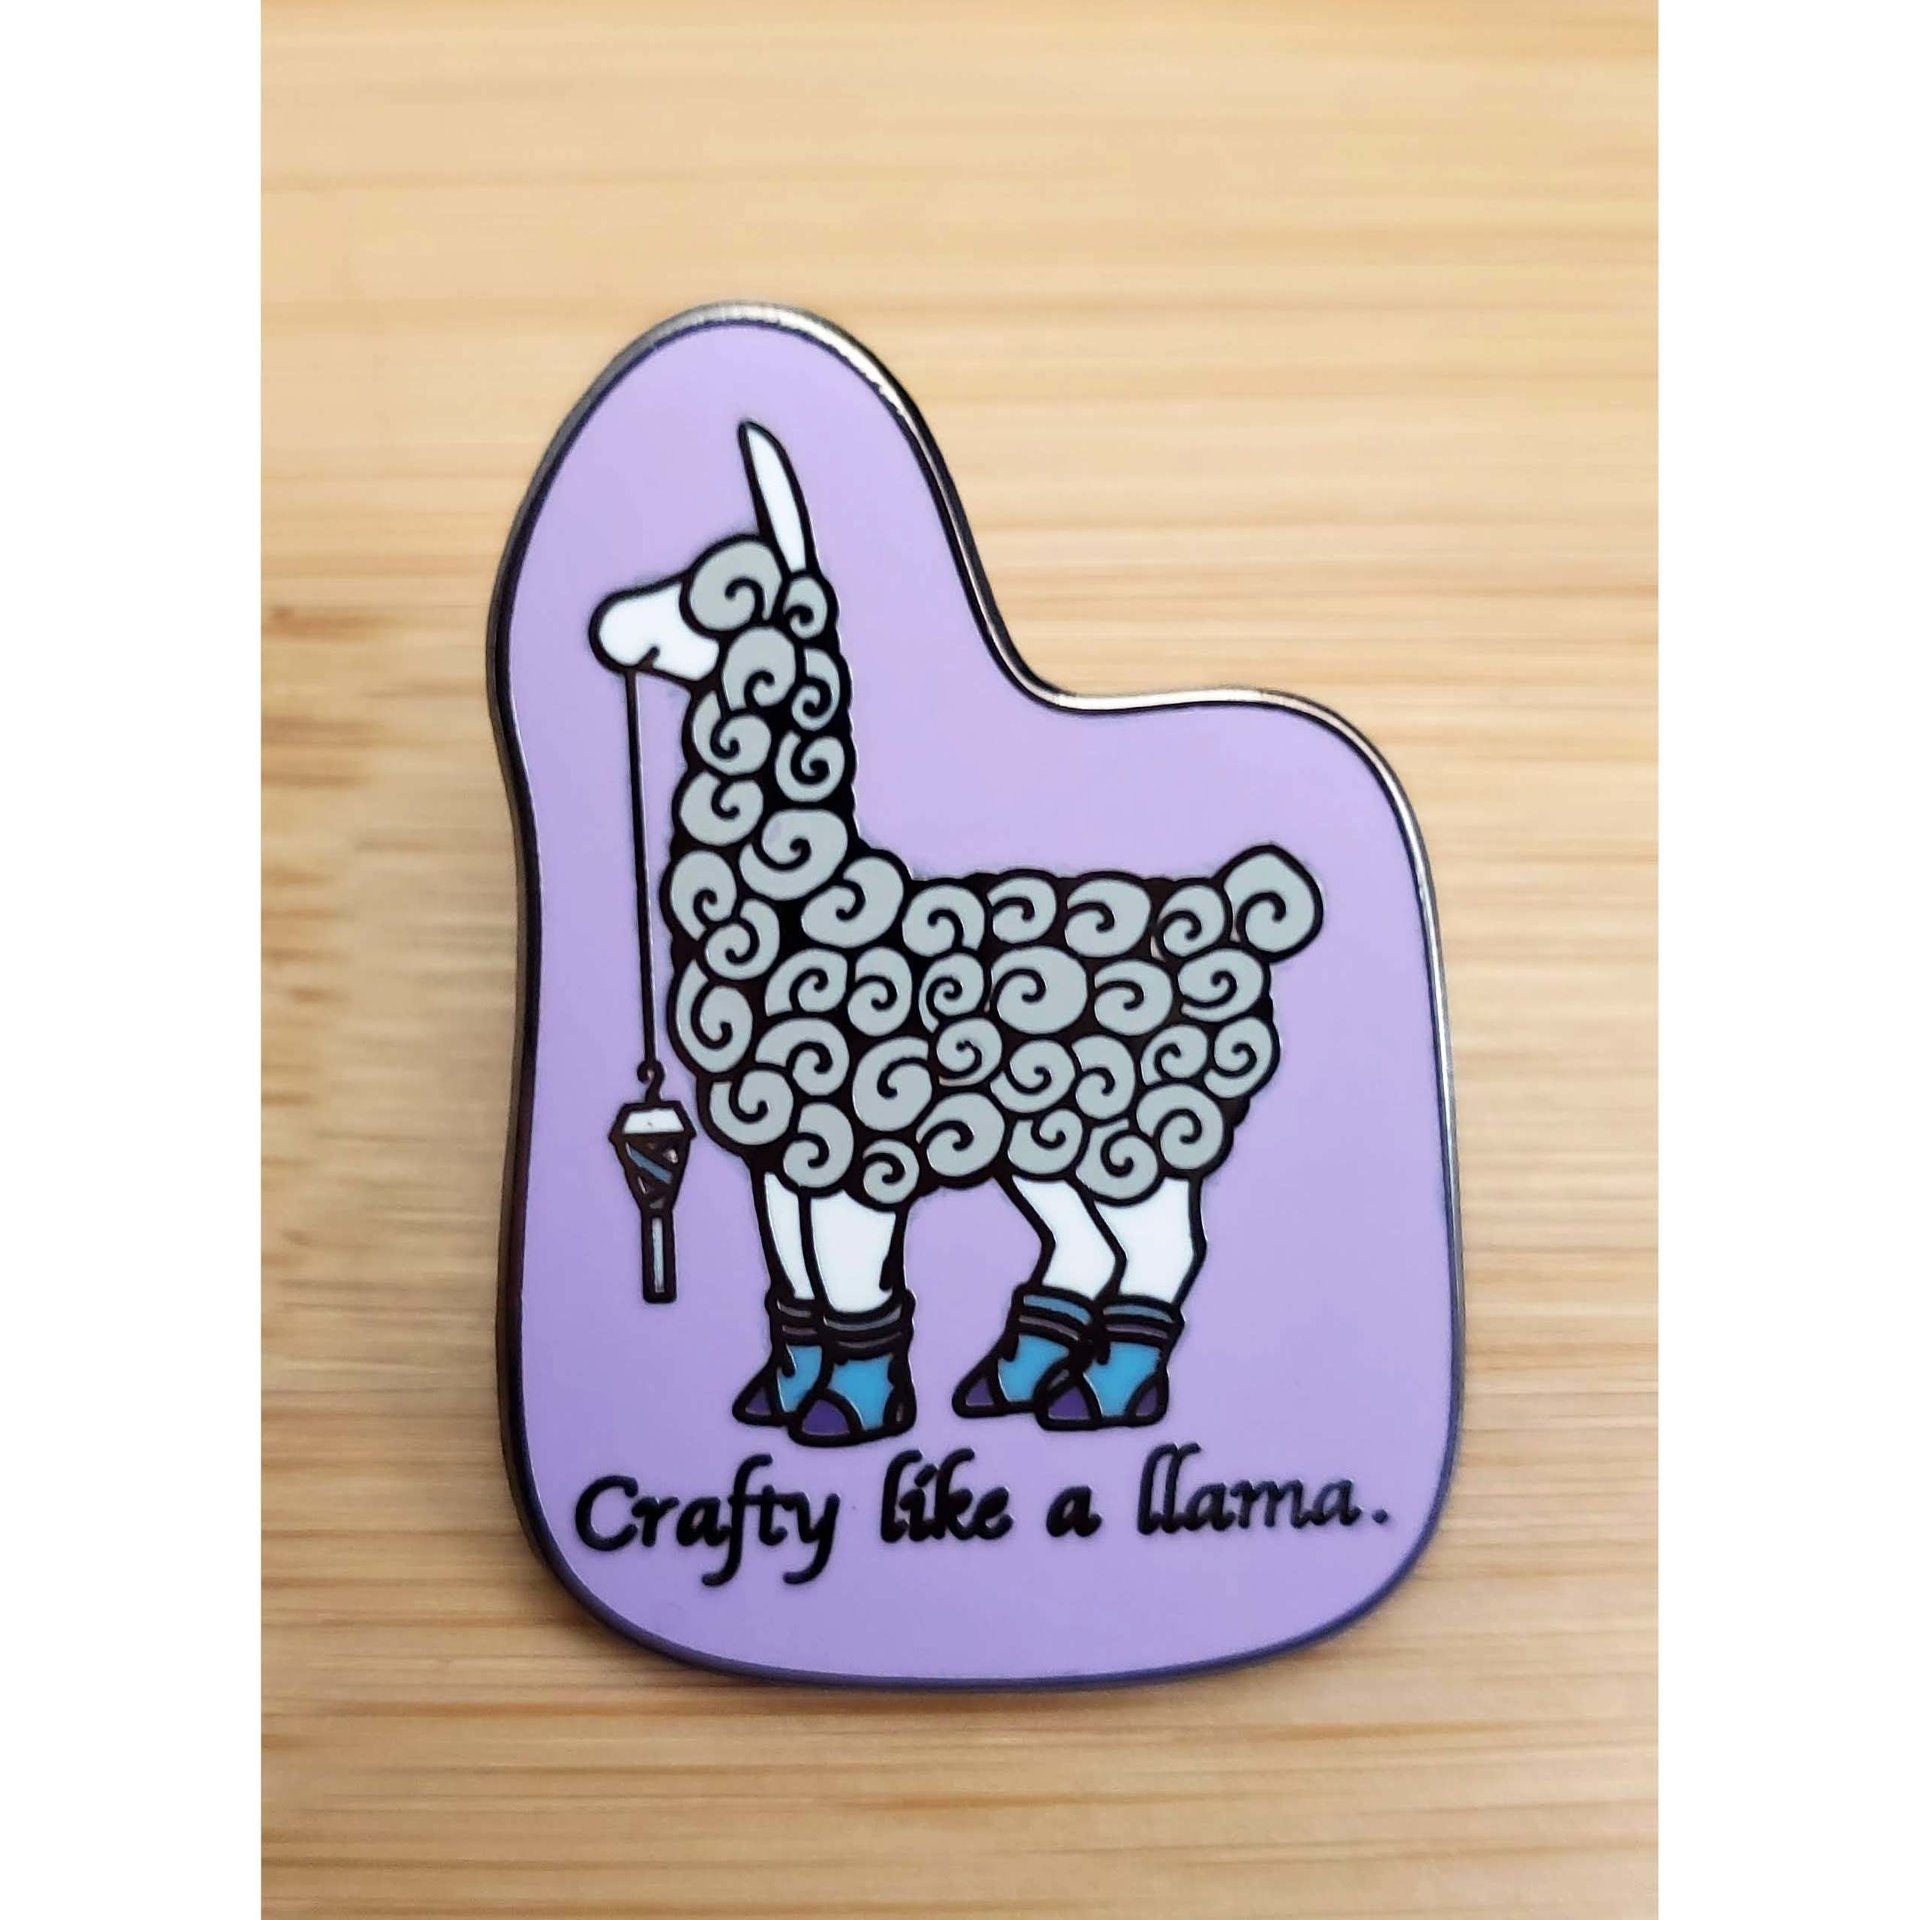 Elli "Crafty like a llama" Hard Enamel Pin